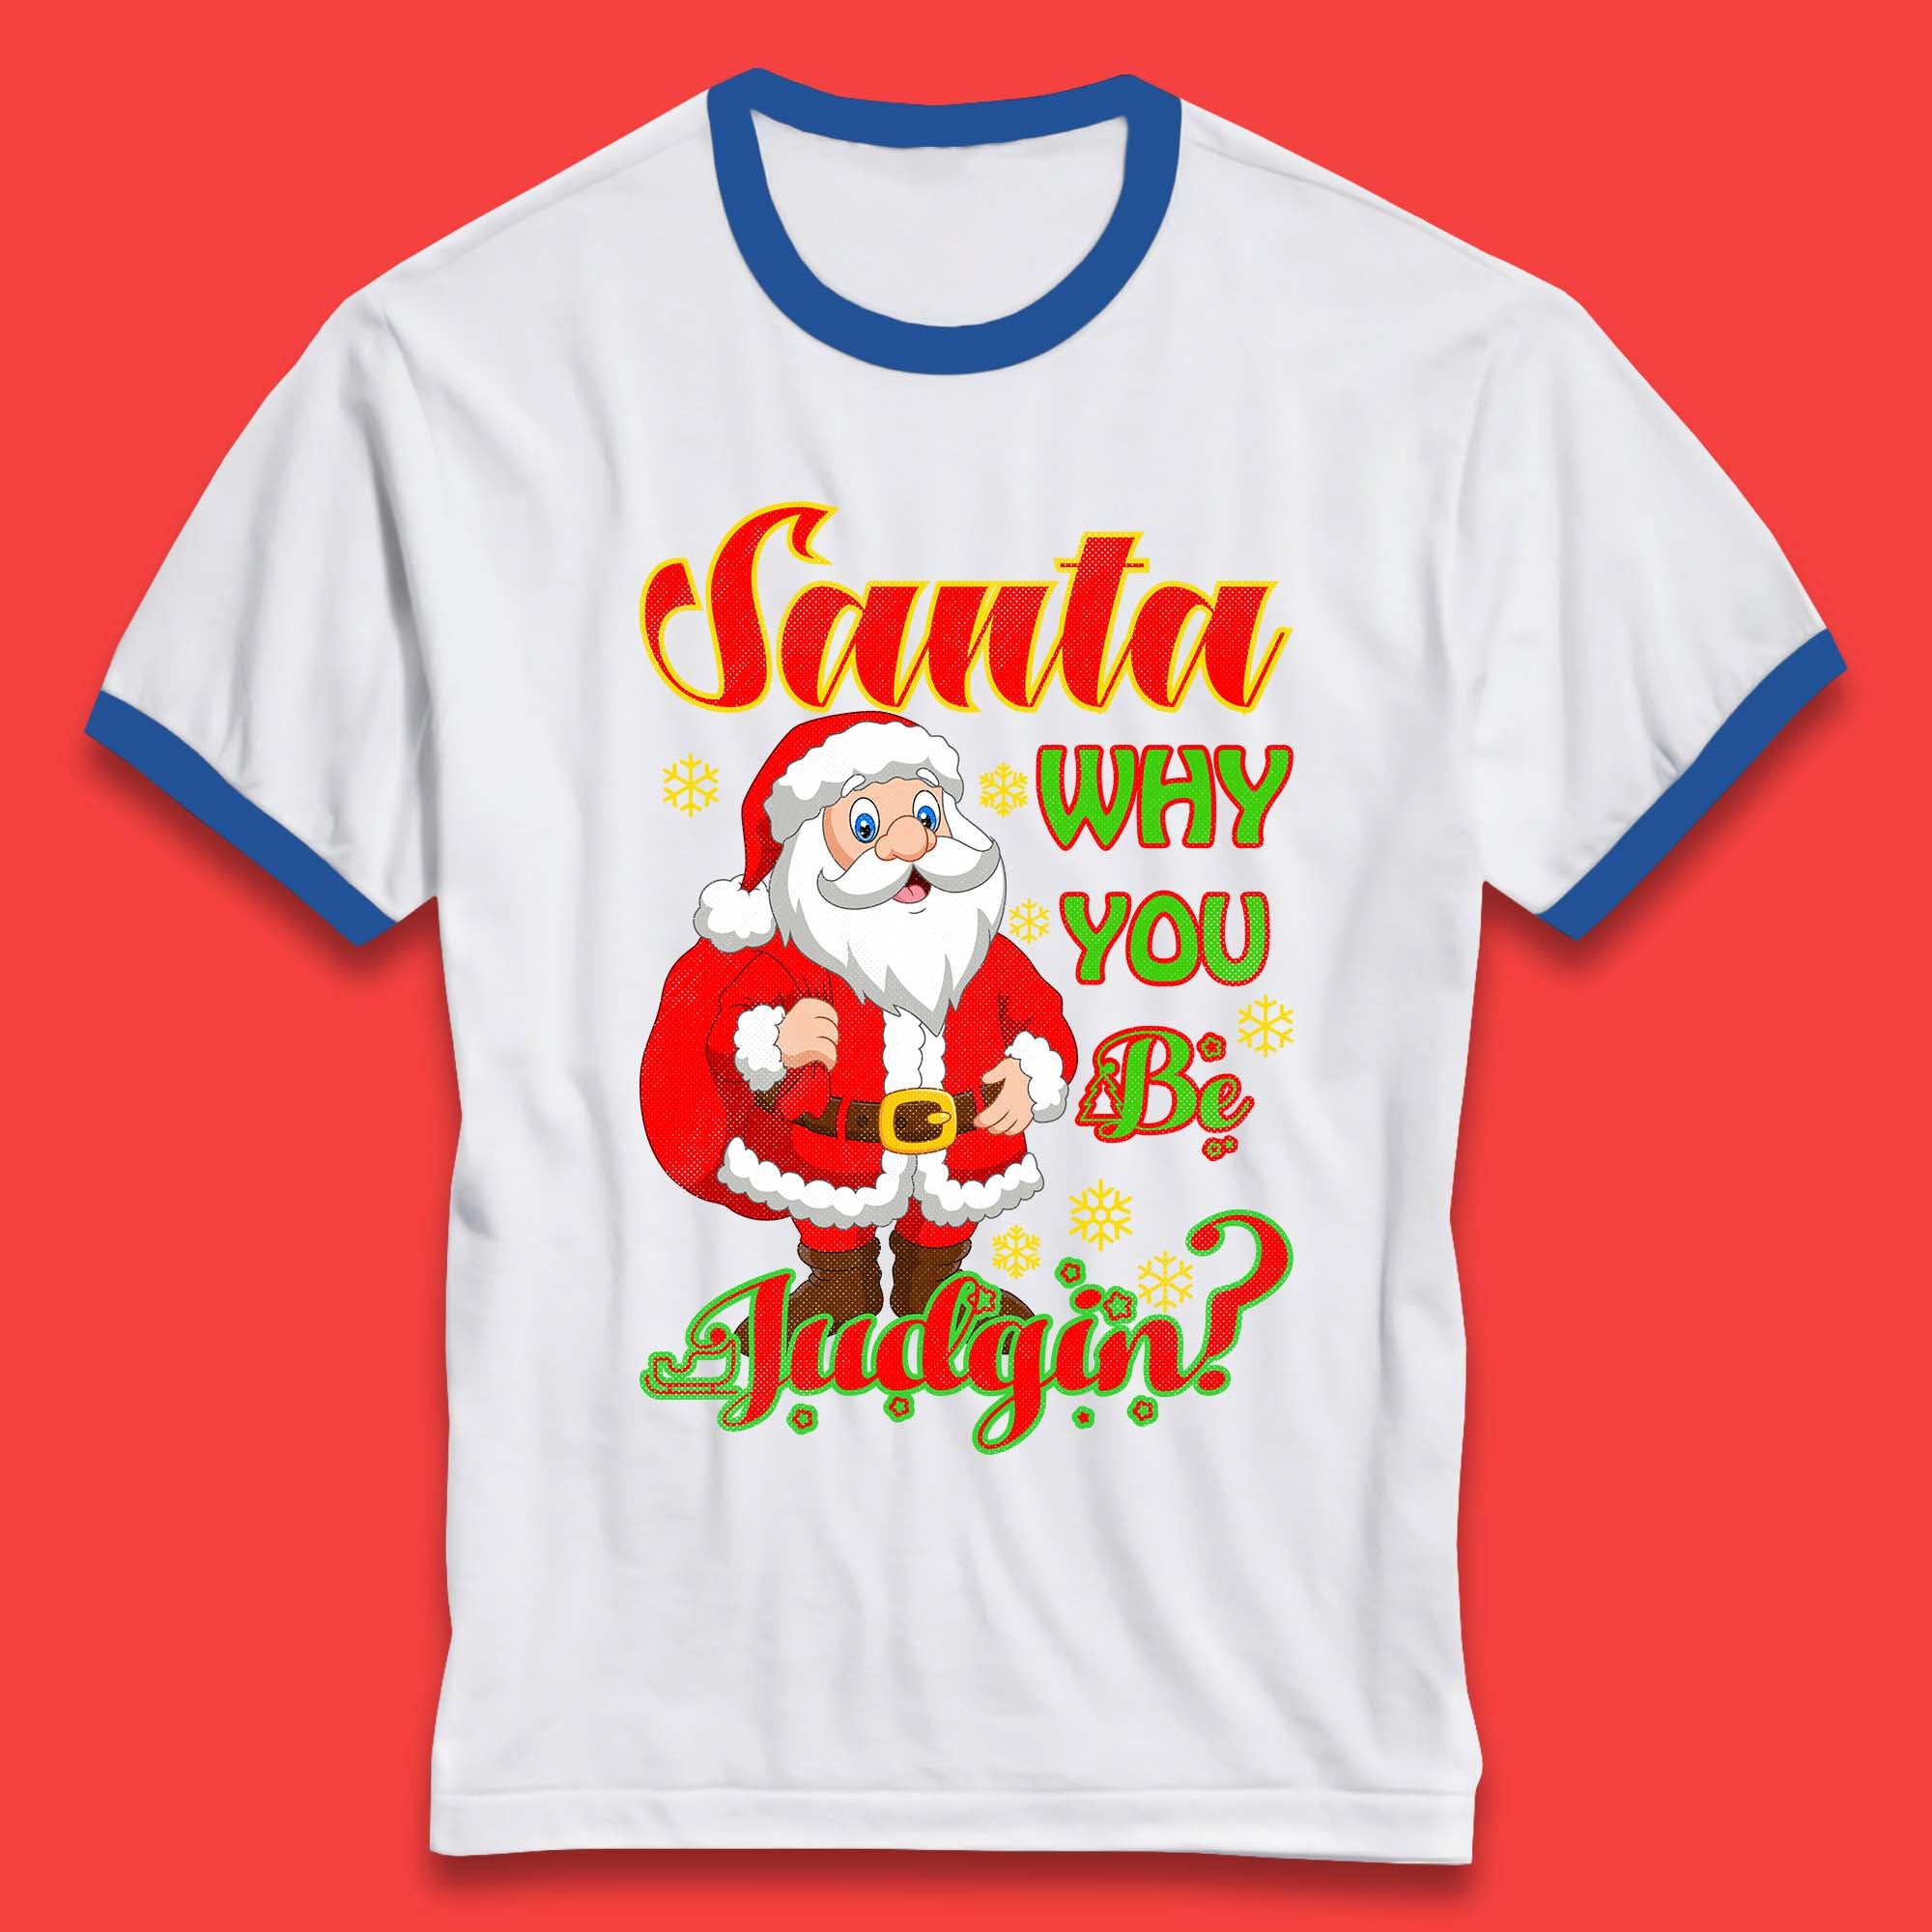 Santa Why You Be Judgin? Christmas Judging Funny Holiday Season Xmas Ringer T Shirt